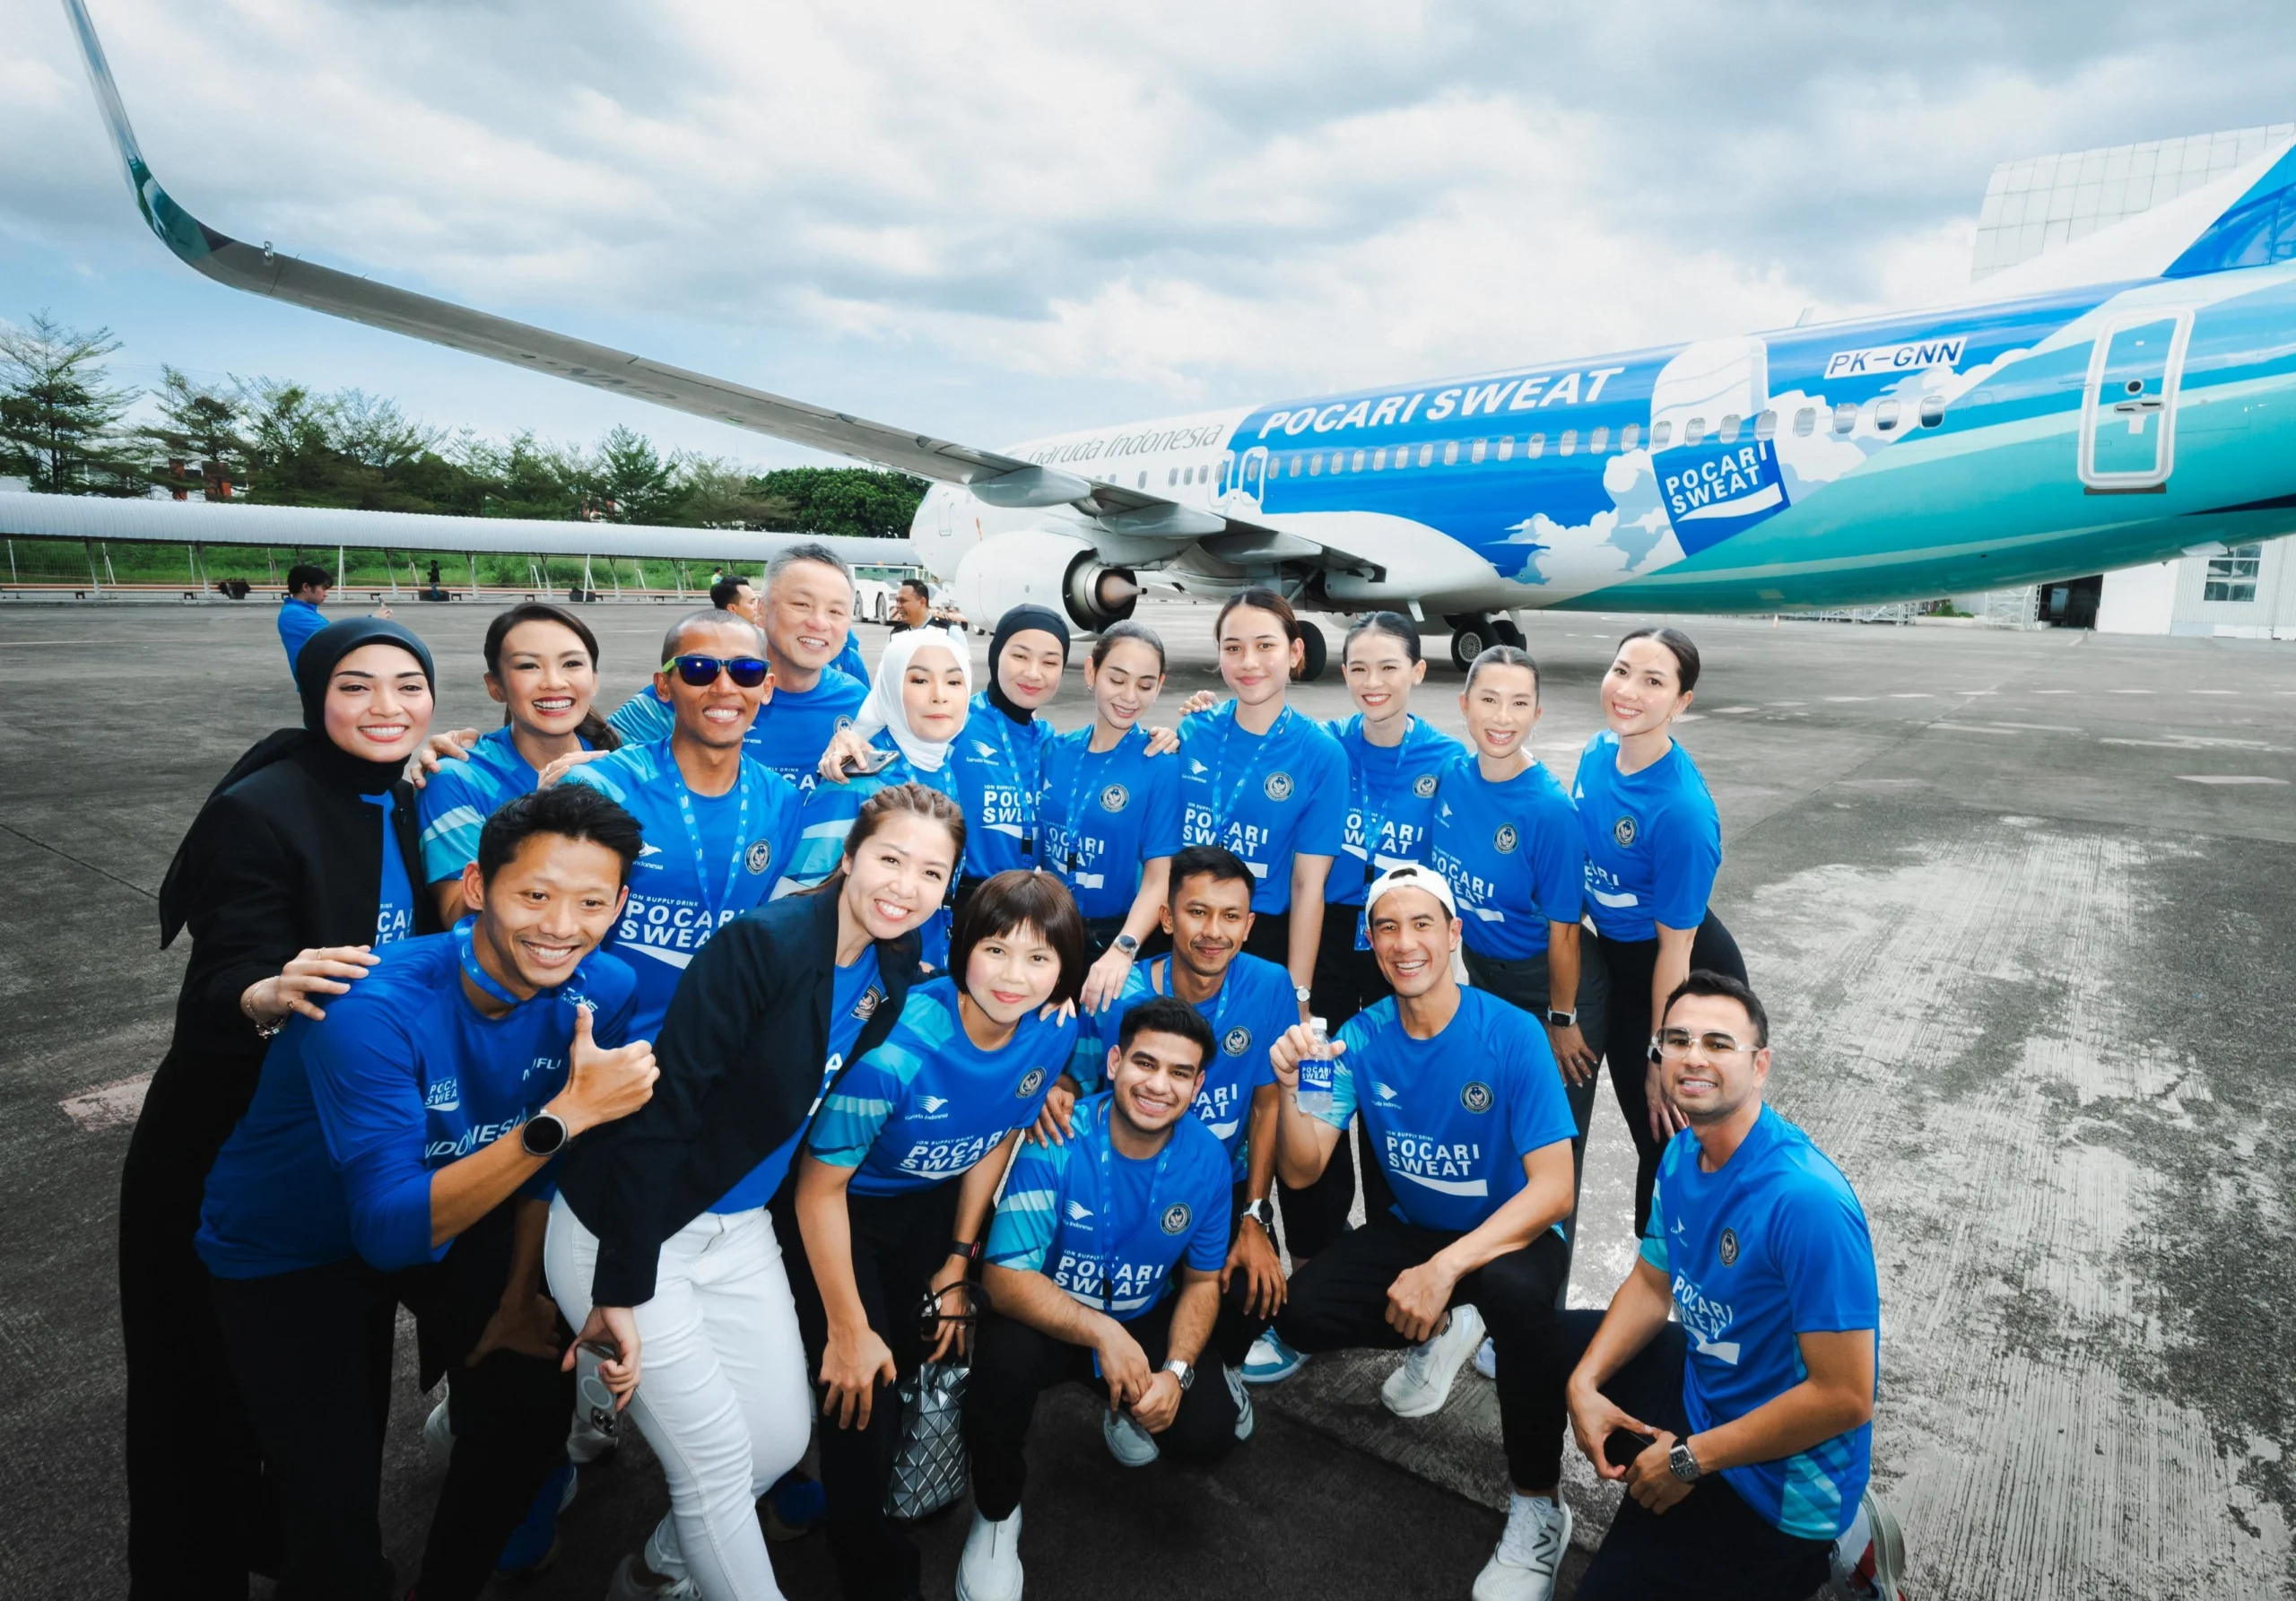 Untuk mendukung Sport Tourism di Indonesia, Pocari Sweat menjalin kerjasama dengan PT Garuda Indonesia dengan mem-branding pesawat Boing